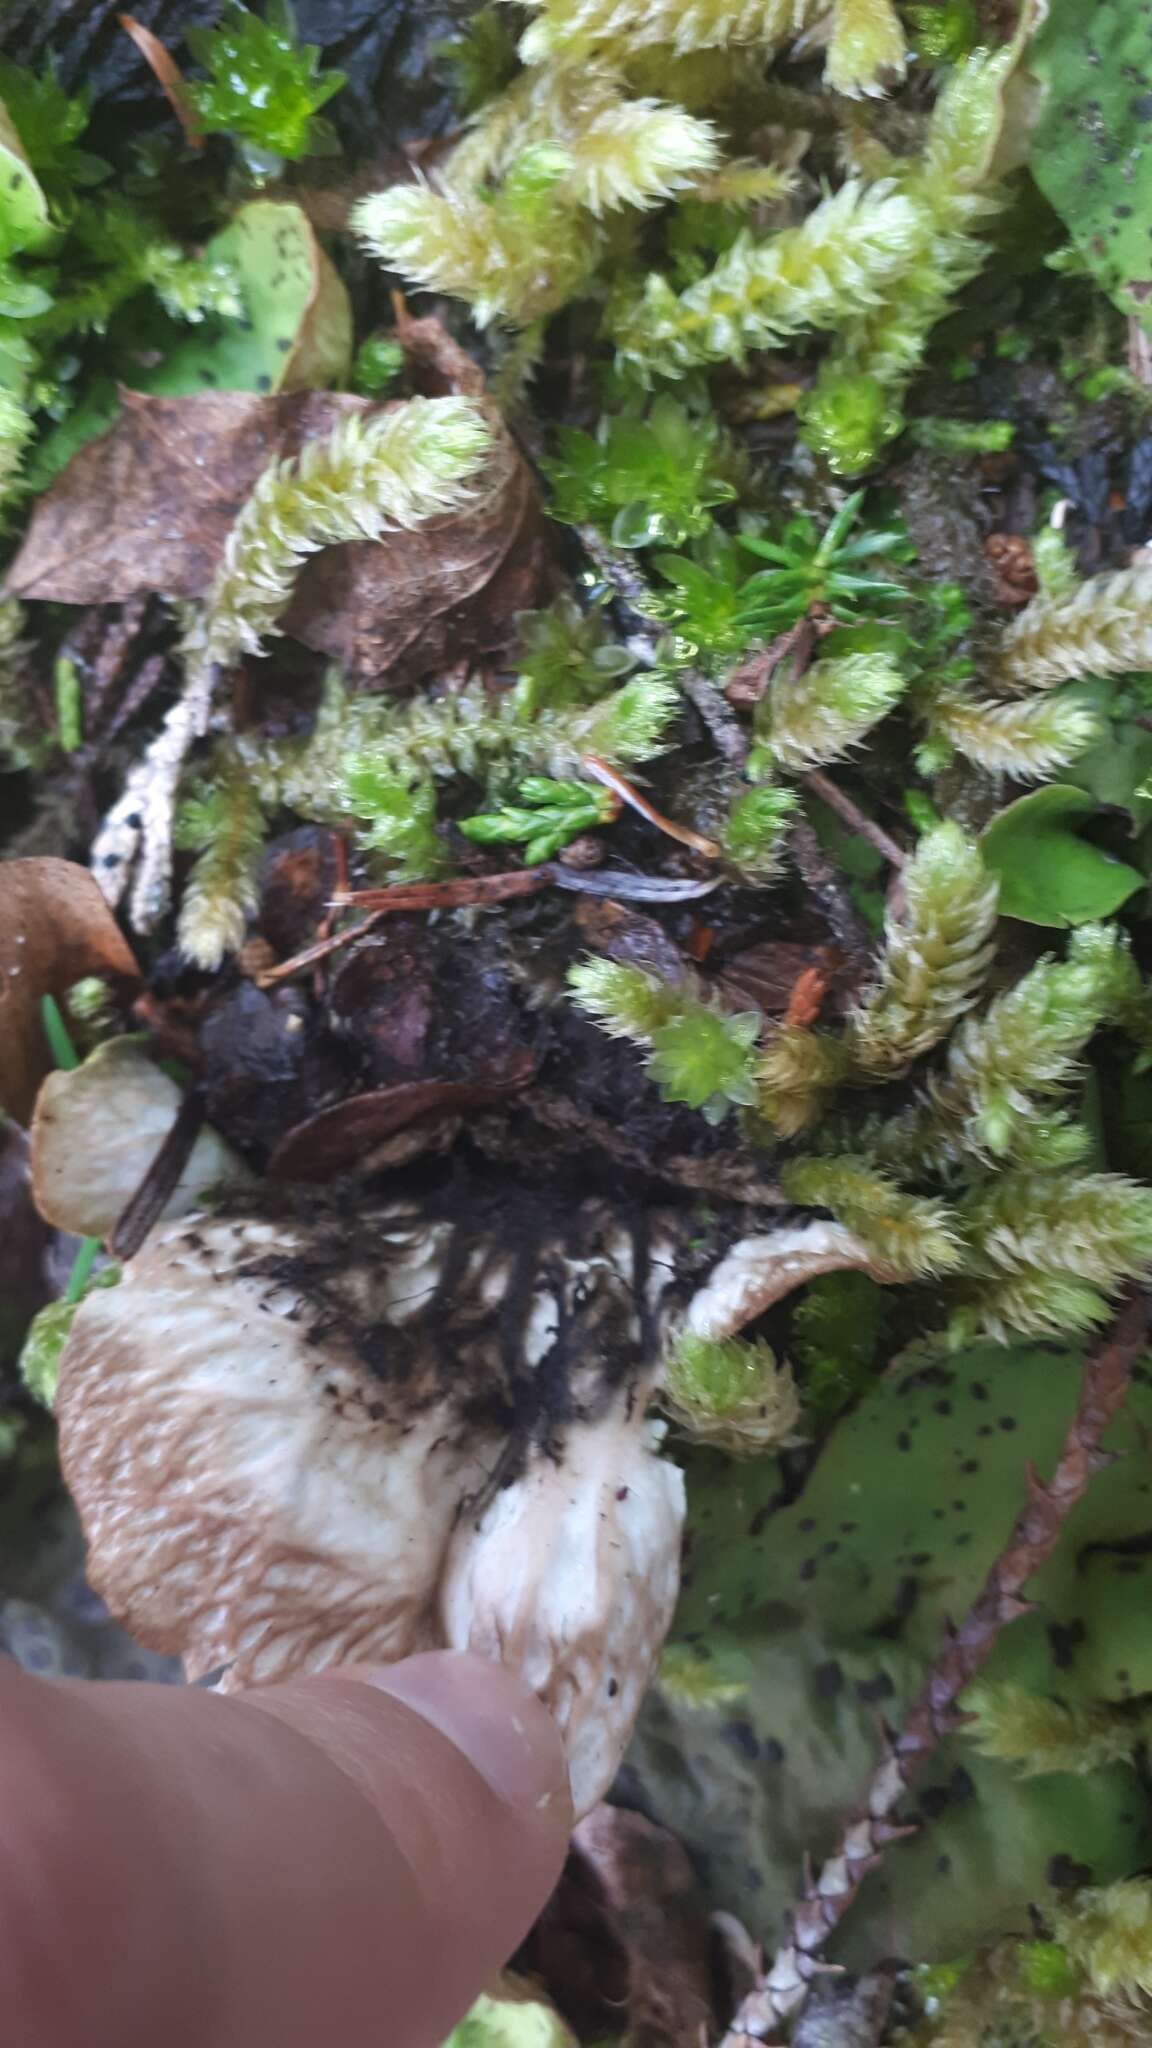 Image of British felt lichen